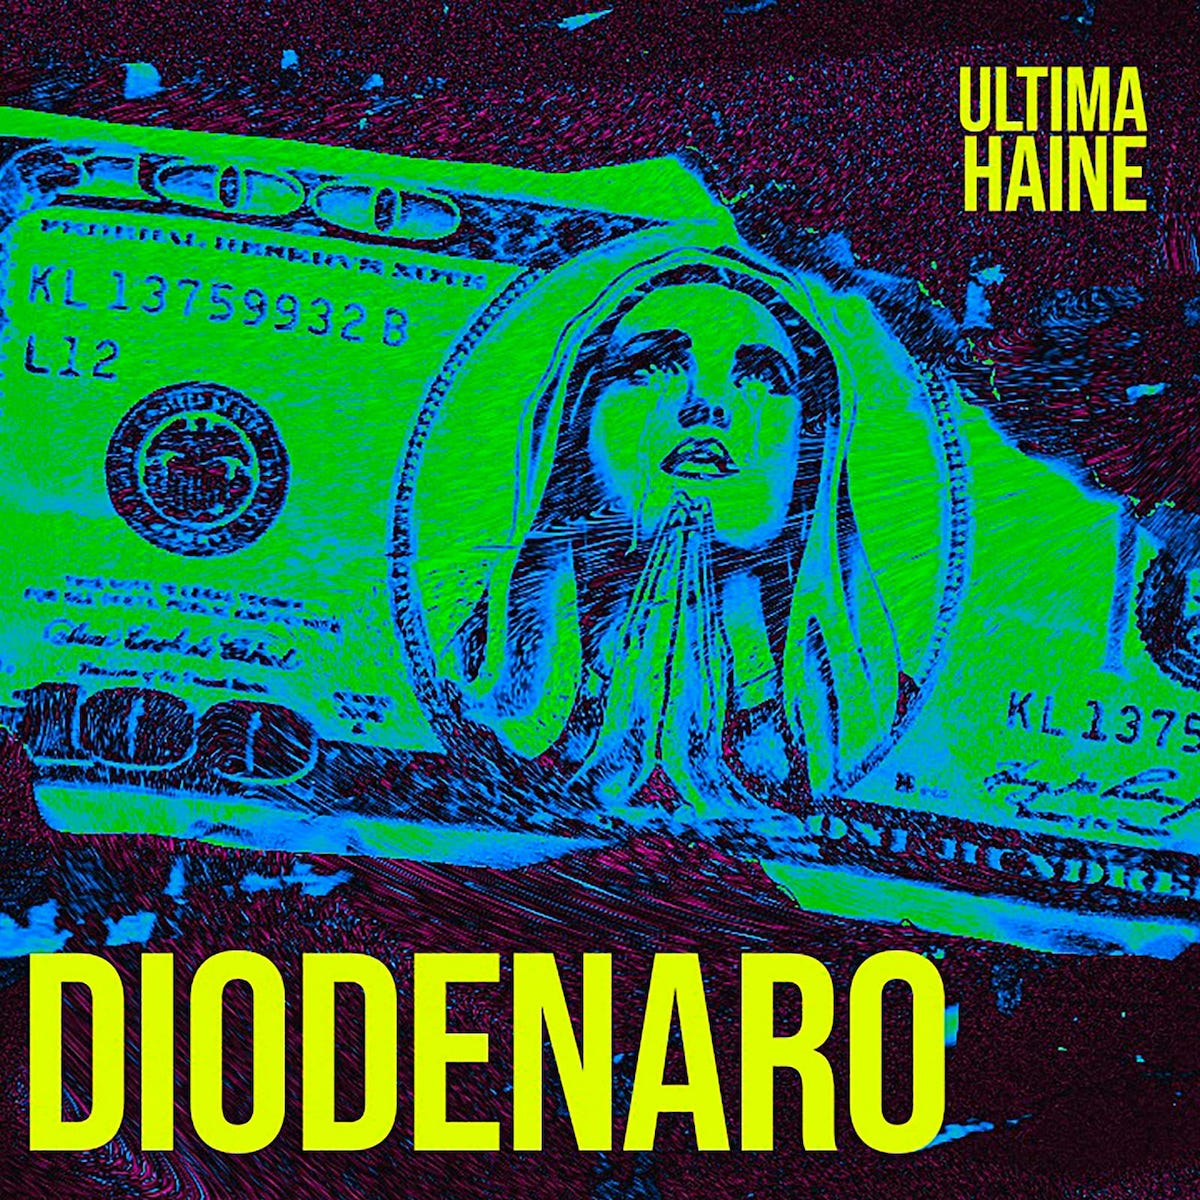 DIODENARO è il debut album degli ULTIMA HAINE